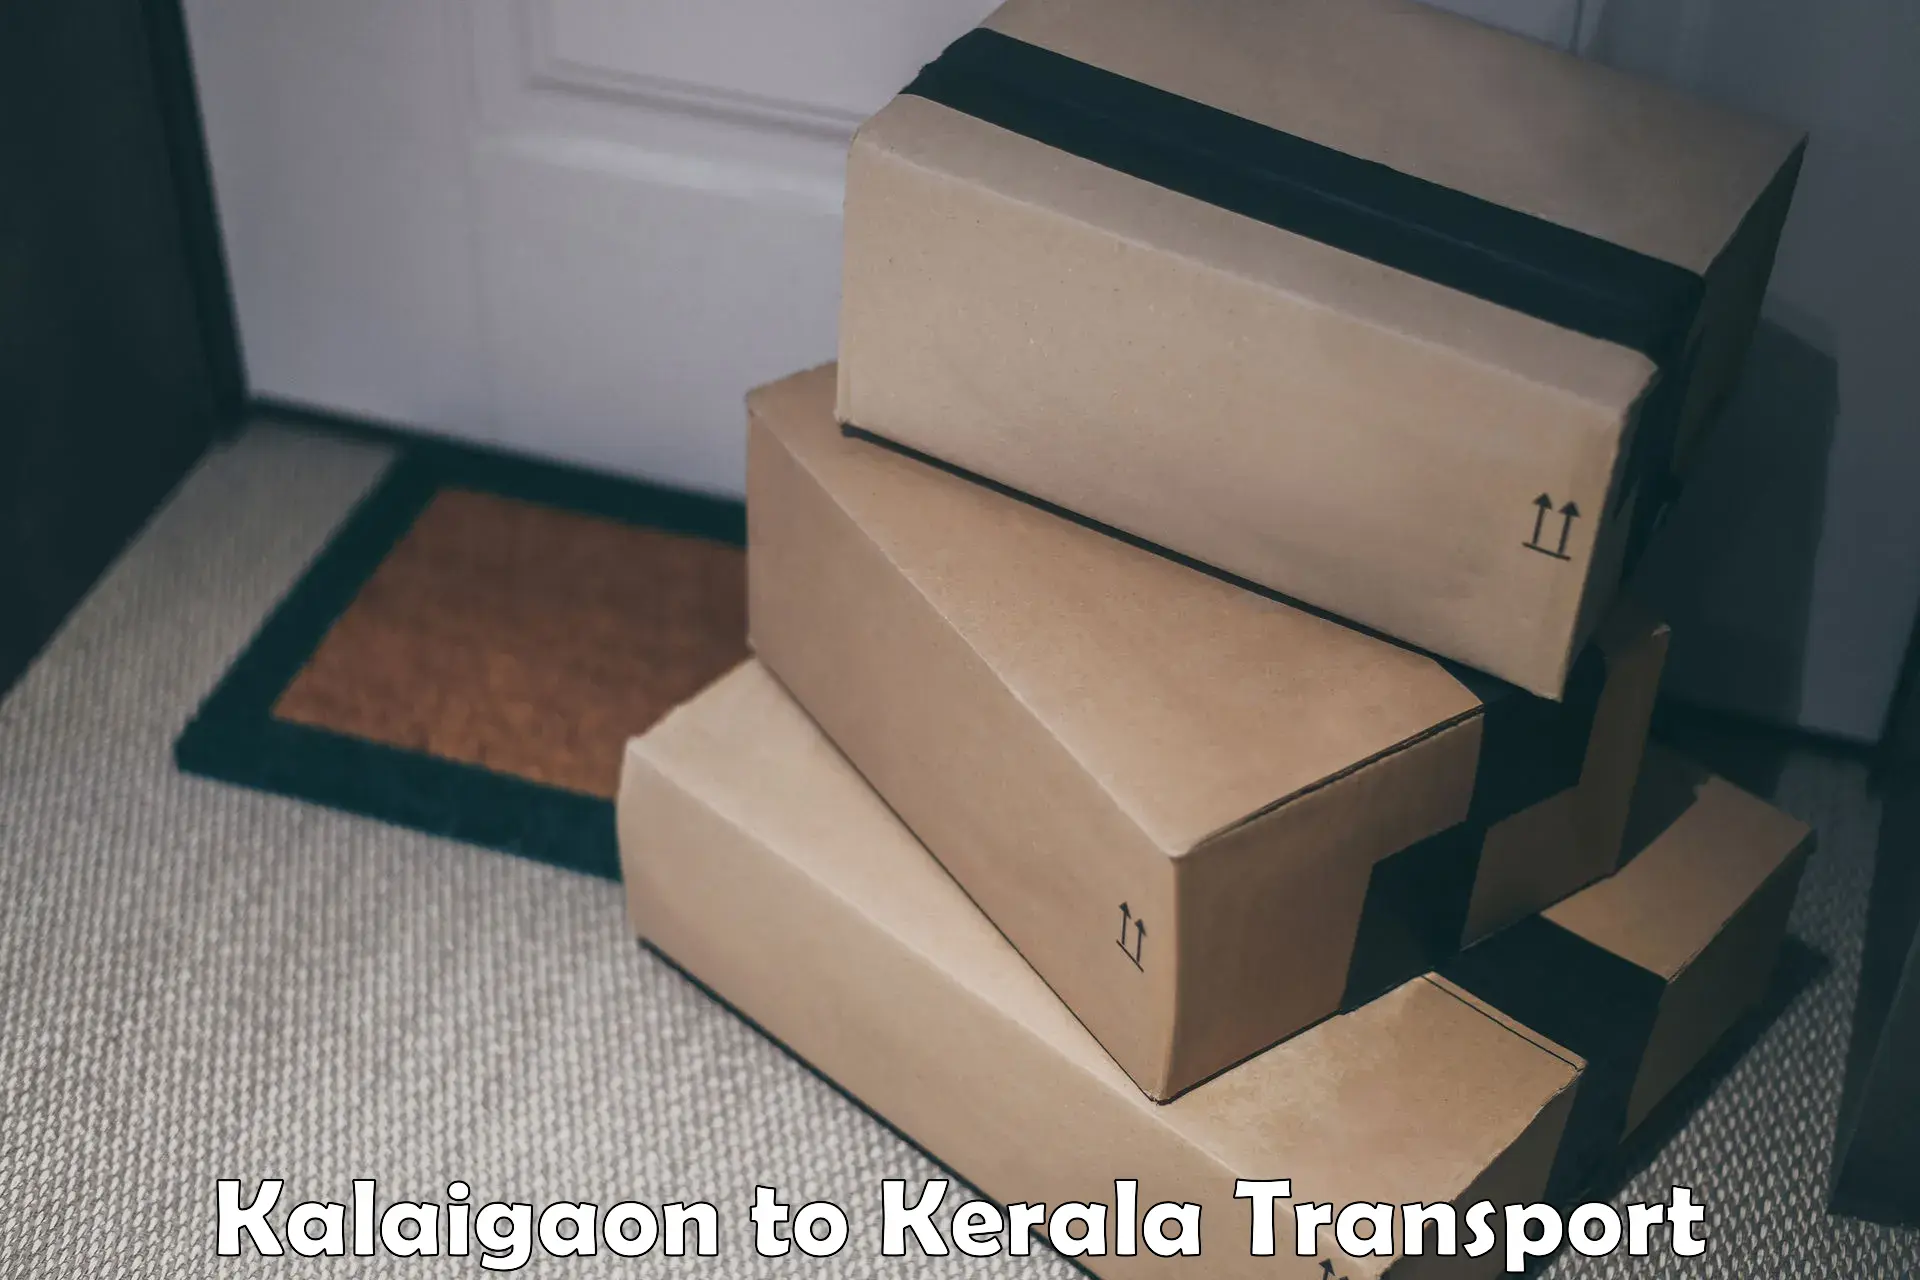 Vehicle transport services Kalaigaon to Kuttikol